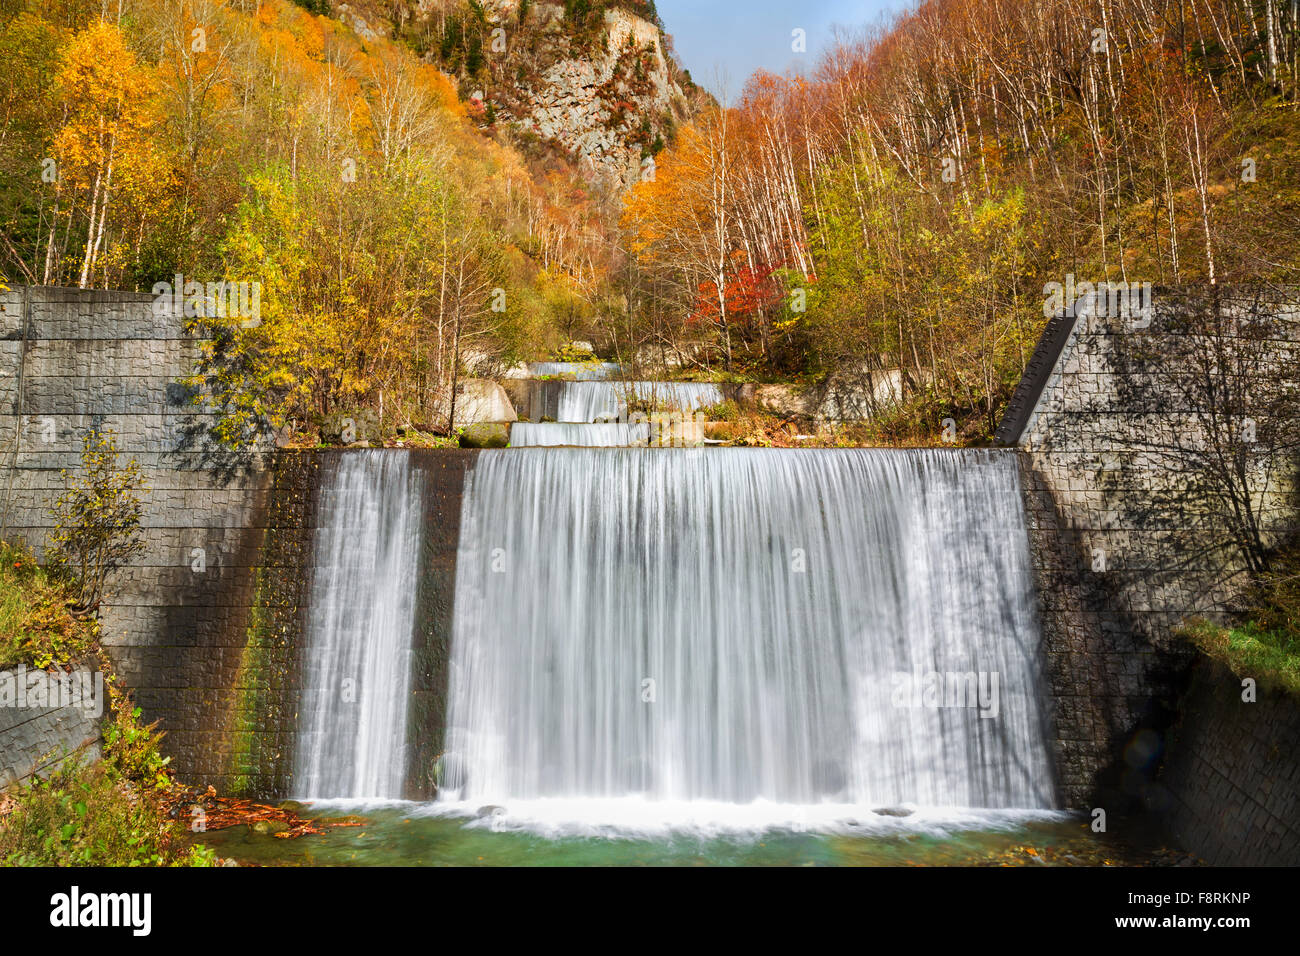 Forest waterfall in autumn Hokkaido, Japan Stock Photo